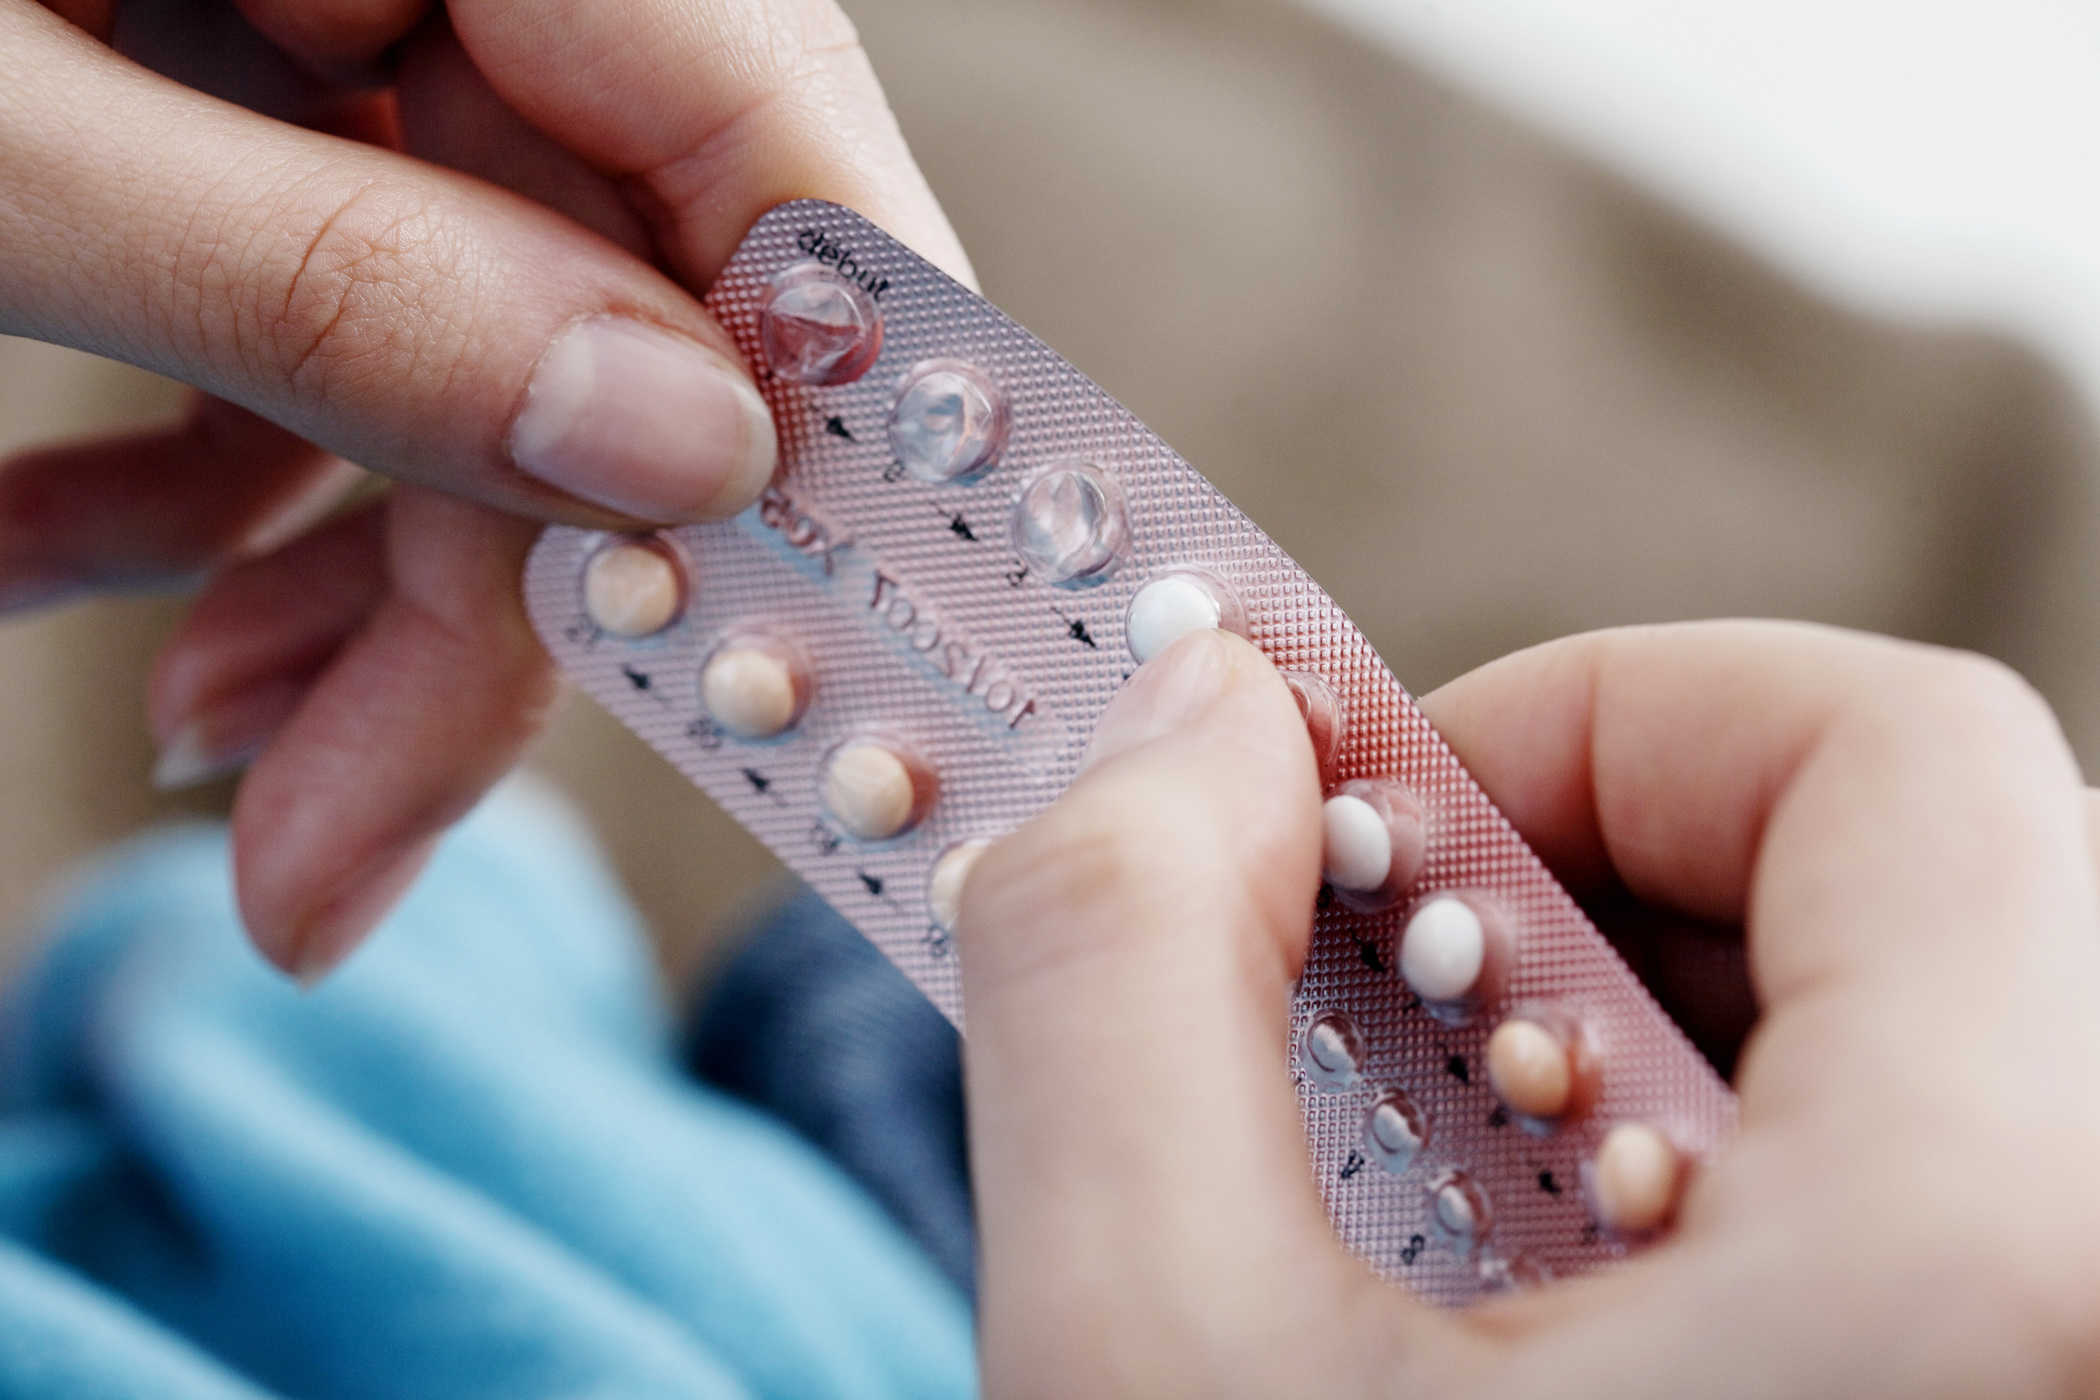 ยาคุมกำเนิด: ประโยชน์ ความเสี่ยง และวิธีป้องกันการตั้งครรภ์